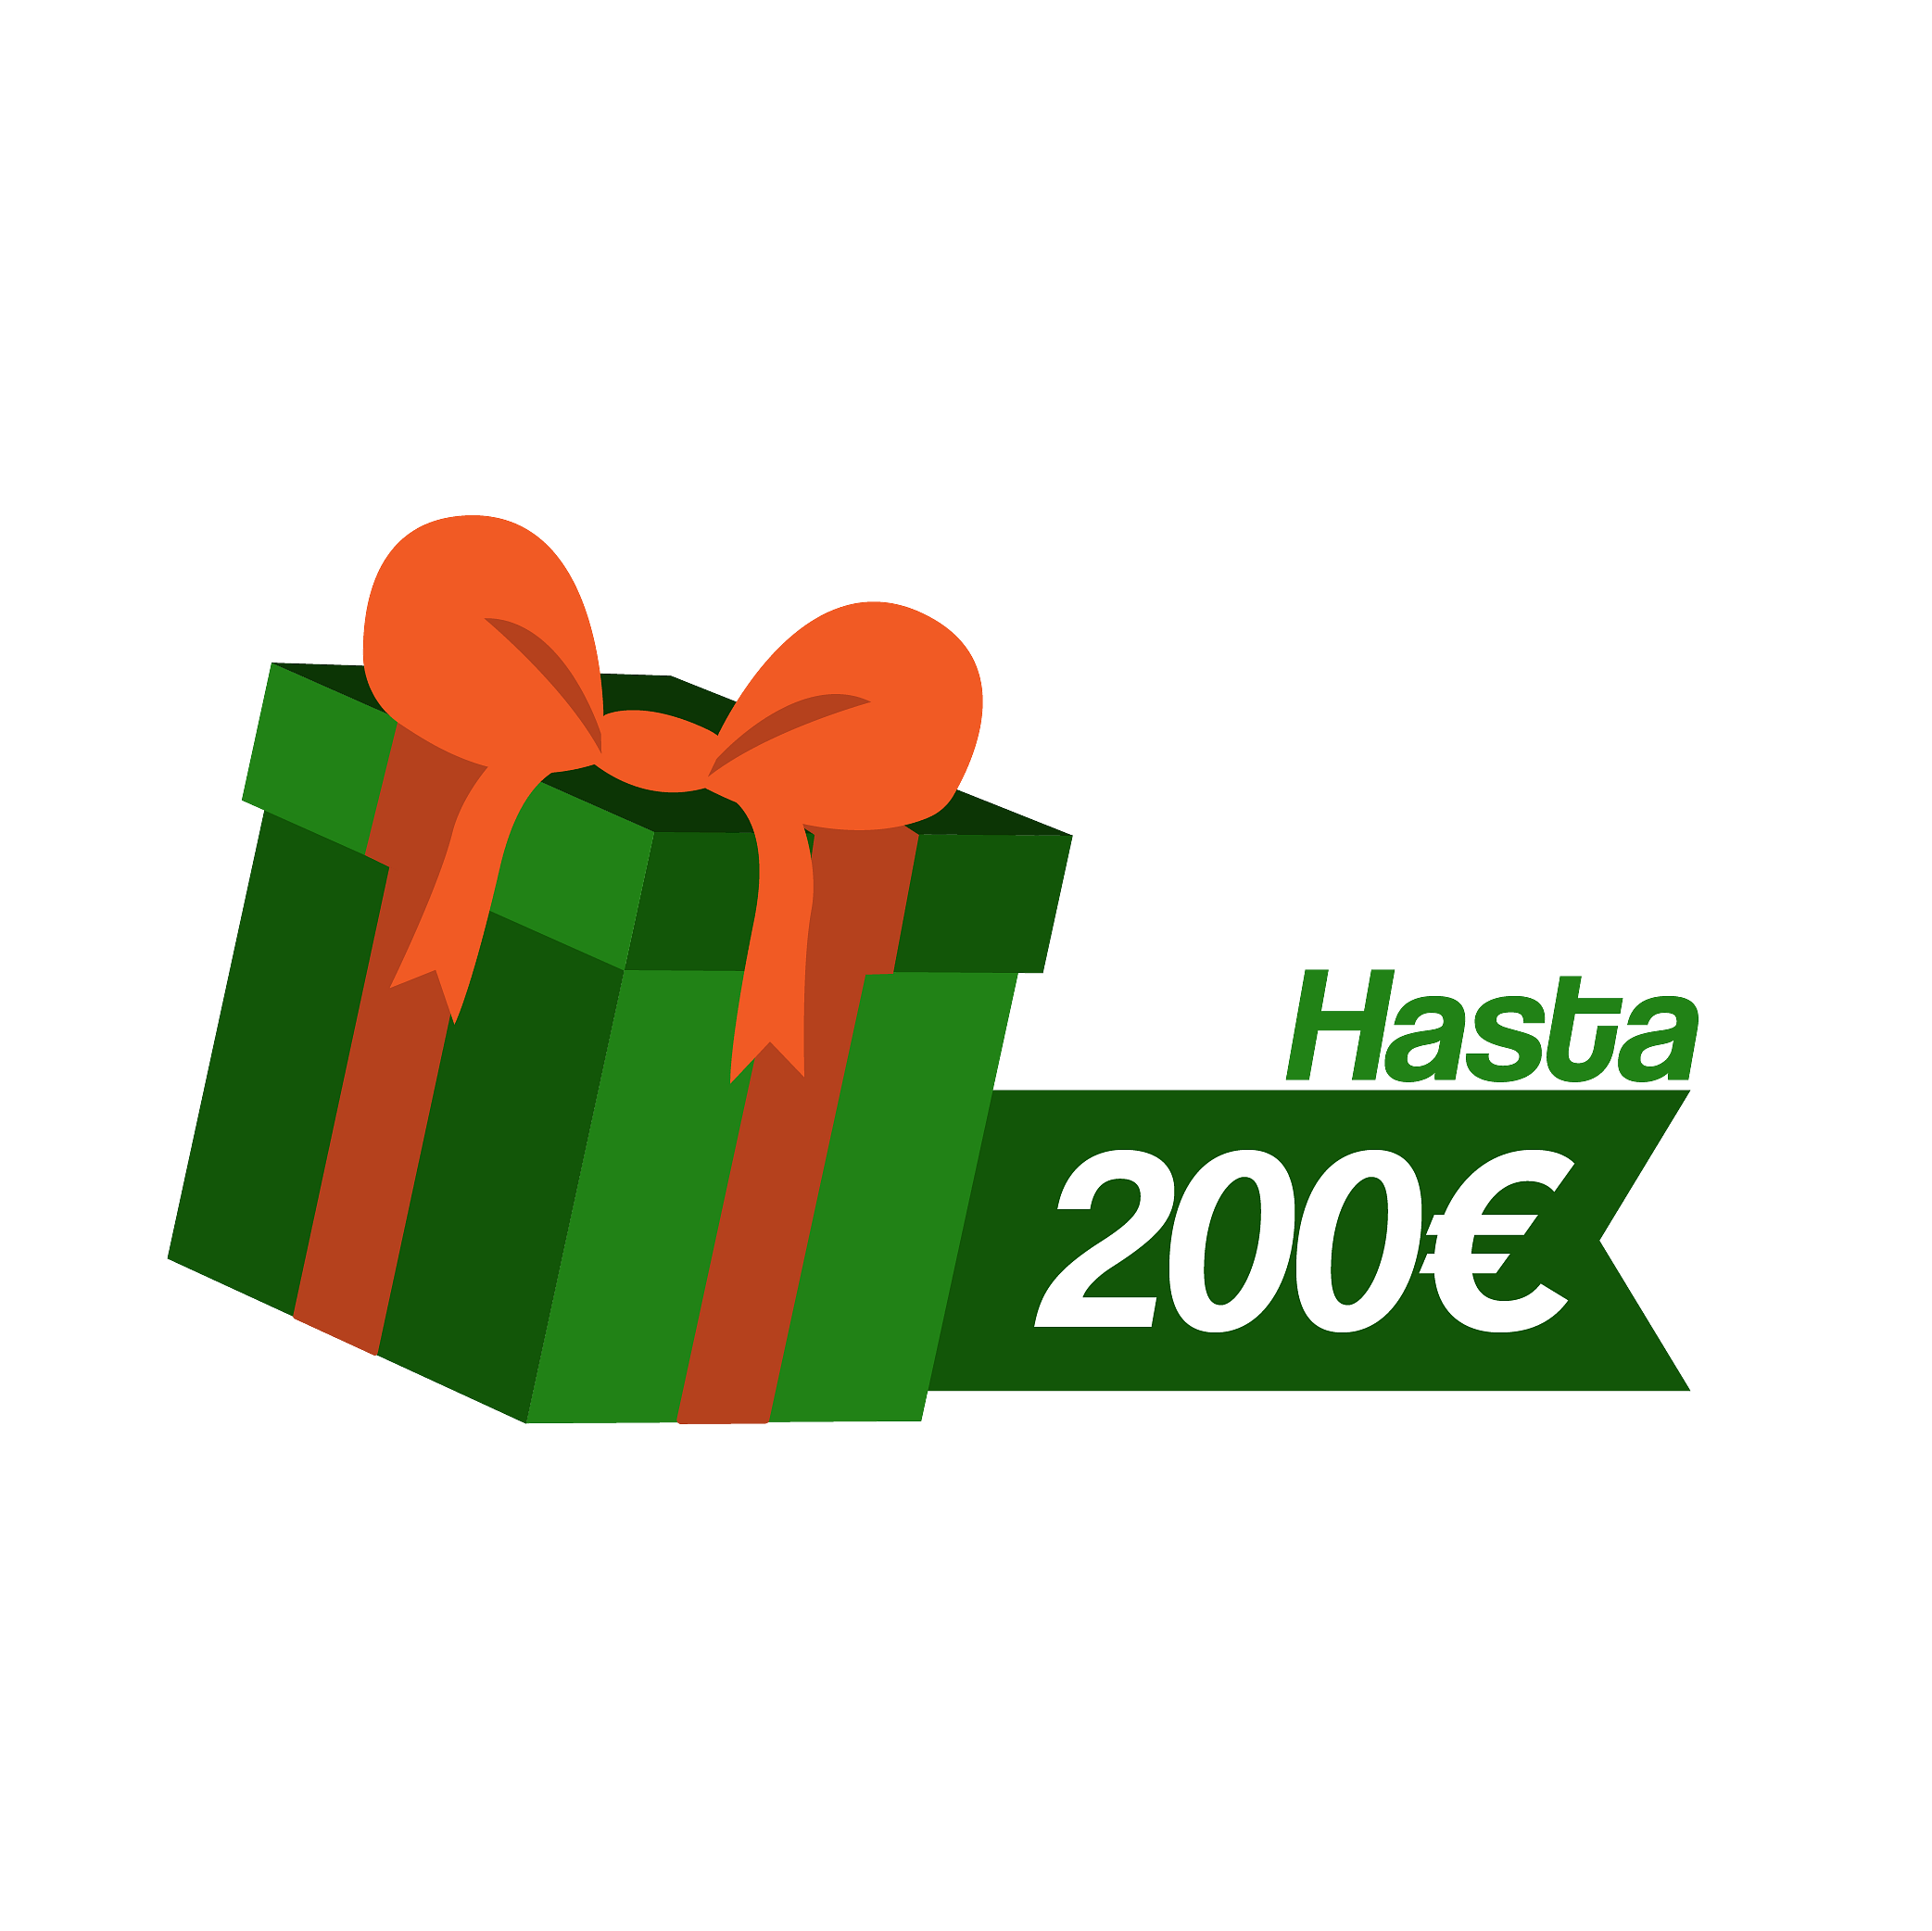 Regalos de Reyes Magos hasta 200 euros